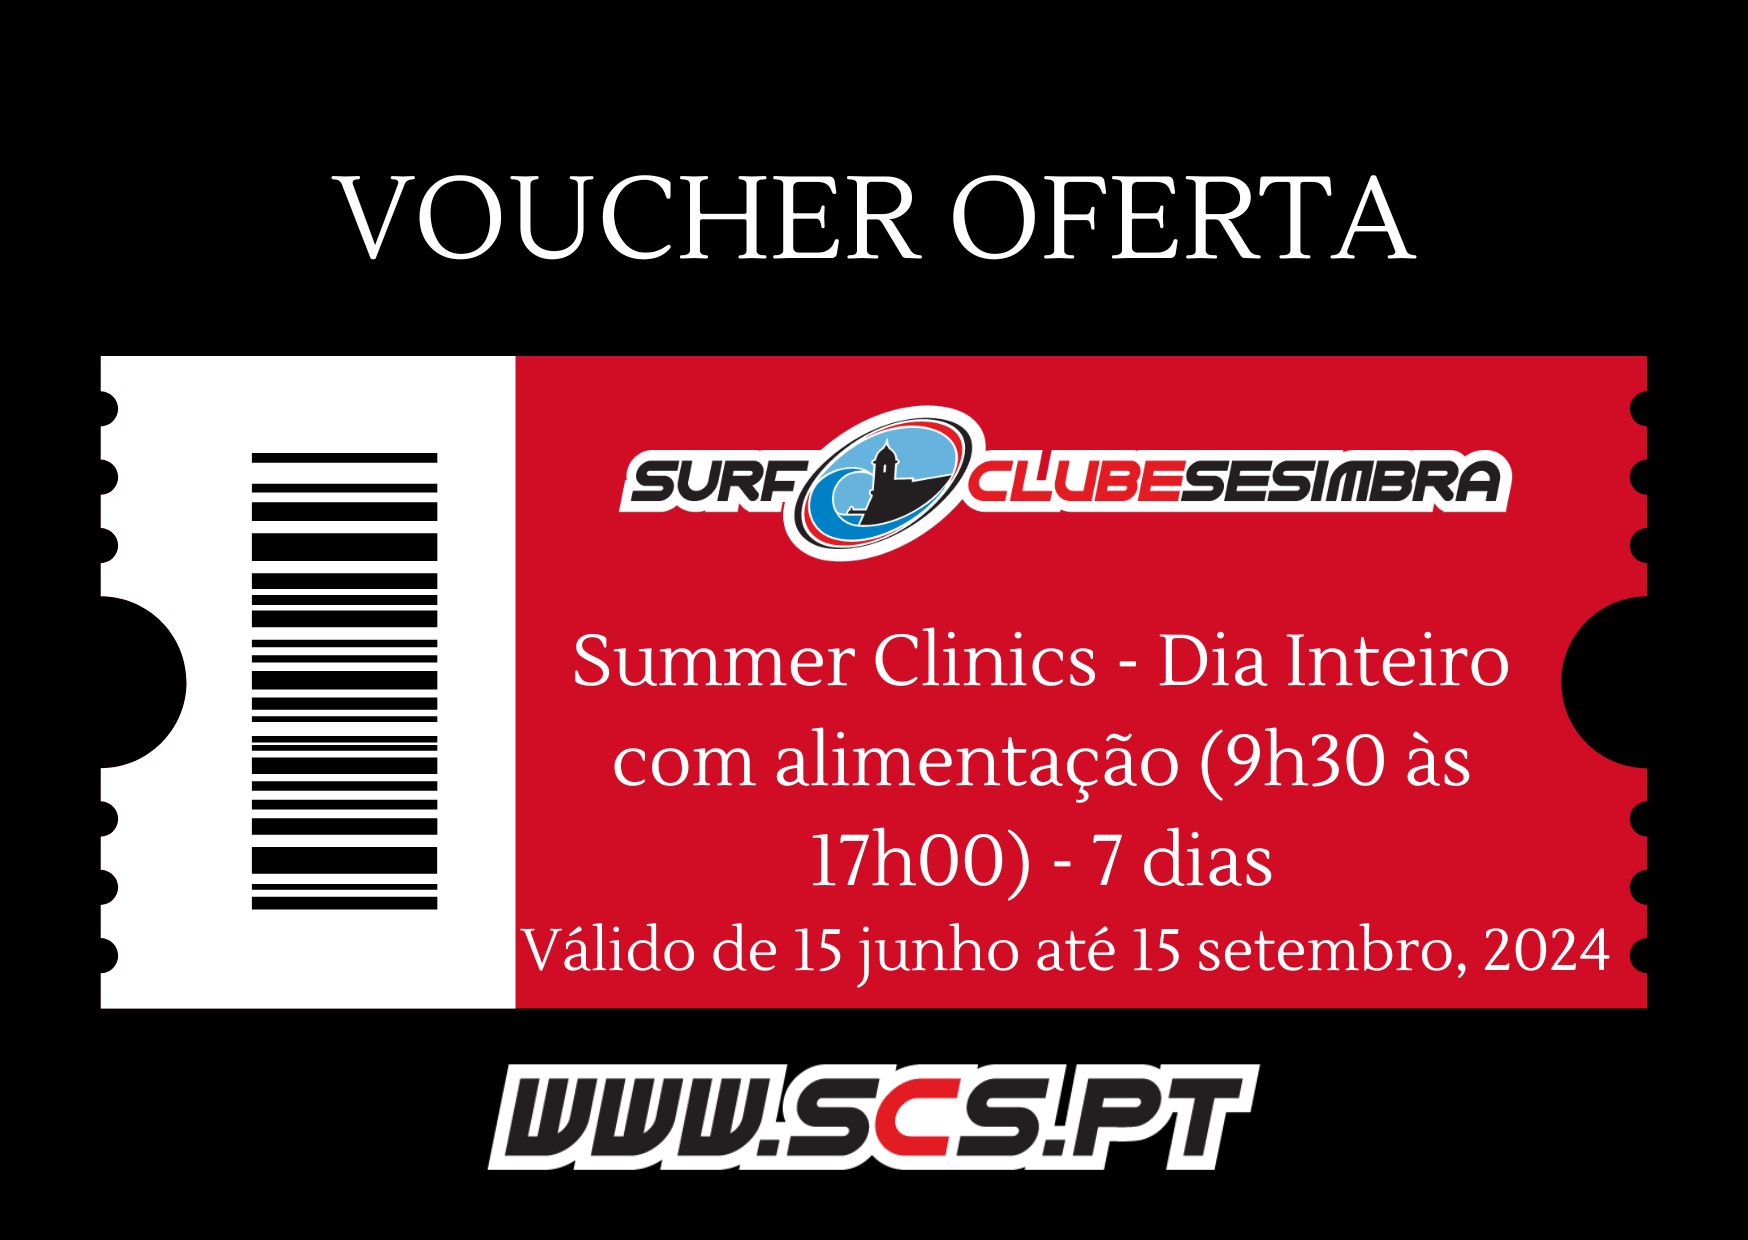 Voucher Oferta Summer Clinics - Dia Inteiro com alimentação (9h30 às 17h00) - 7 dias